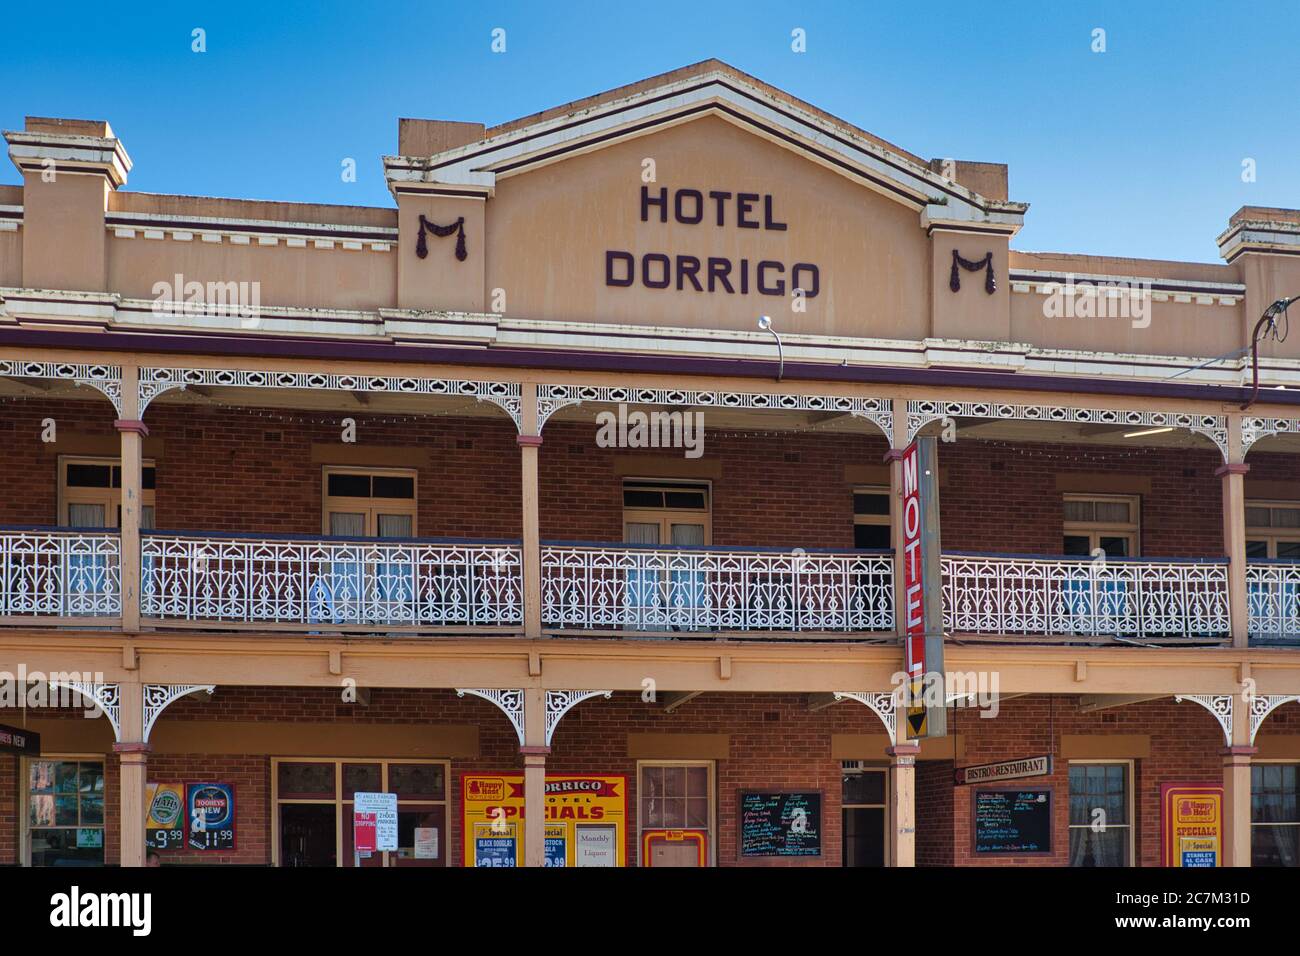 La facciata di un tipico hotel australiano dei primi del 1900 con verande e archi nella cittadina di campagna di Dorrigo, nel centro-est del New South Wales Foto Stock